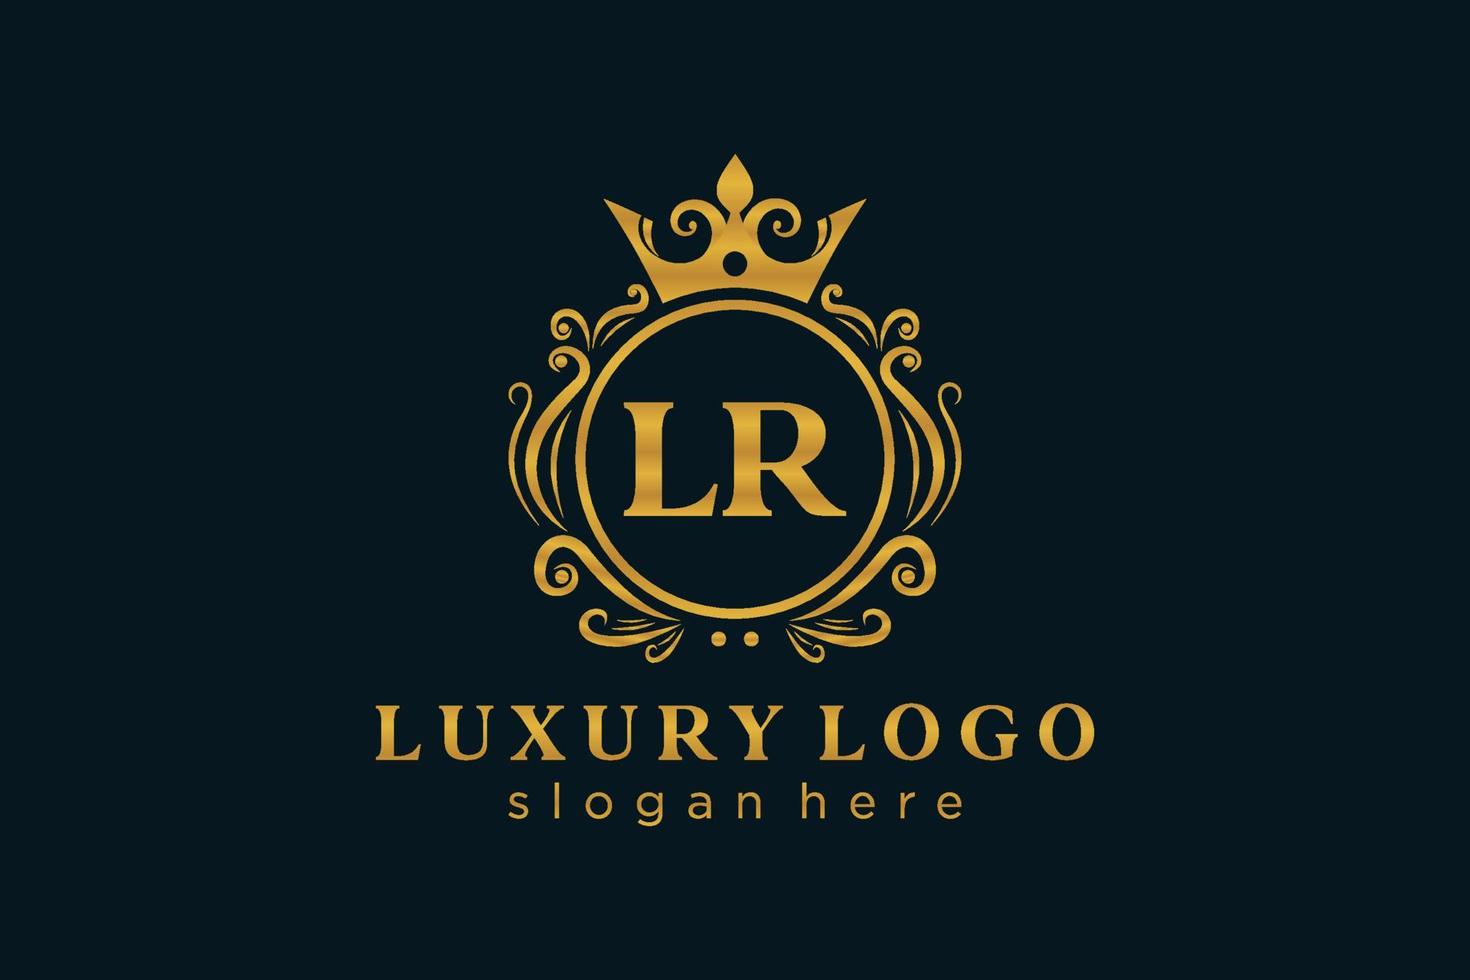 Anfangsbuchstabe Lr Royal Luxury Logo Vorlage in Vektorgrafiken für Restaurant, Lizenzgebühren, Boutique, Café, Hotel, heraldisch, Schmuck, Mode und andere Vektorillustrationen. vektor